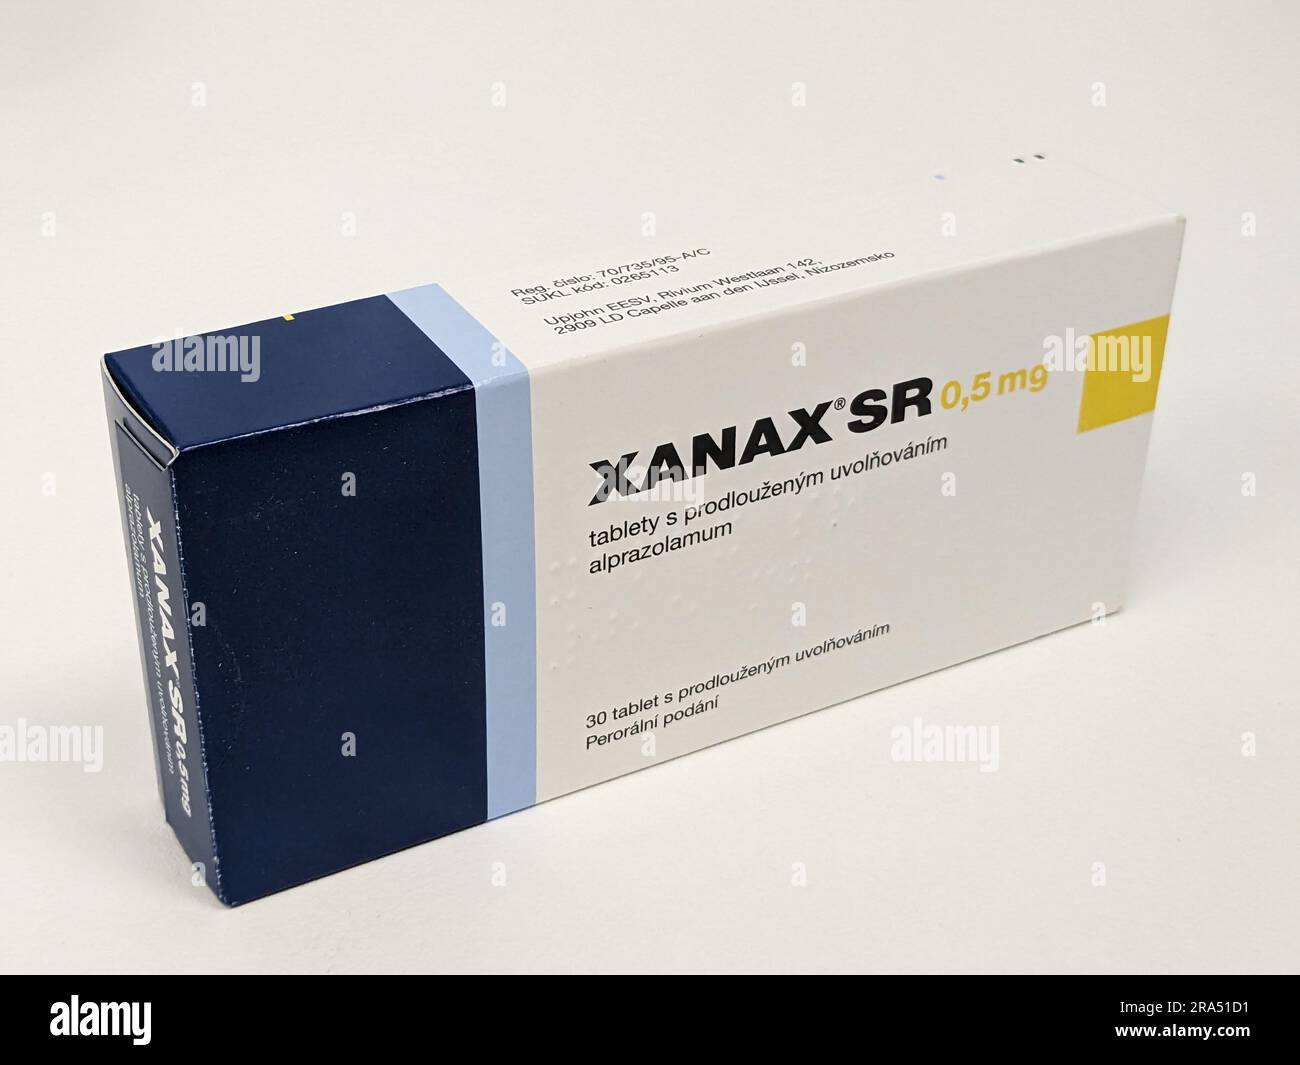 Pilules Xanax avec la substance active Alprazolam, anxiolytiques antidépresseurs médicaments de thérapie, est un médicament populaire à abuser et a la valeur de rue Pfizer Banque D'Images